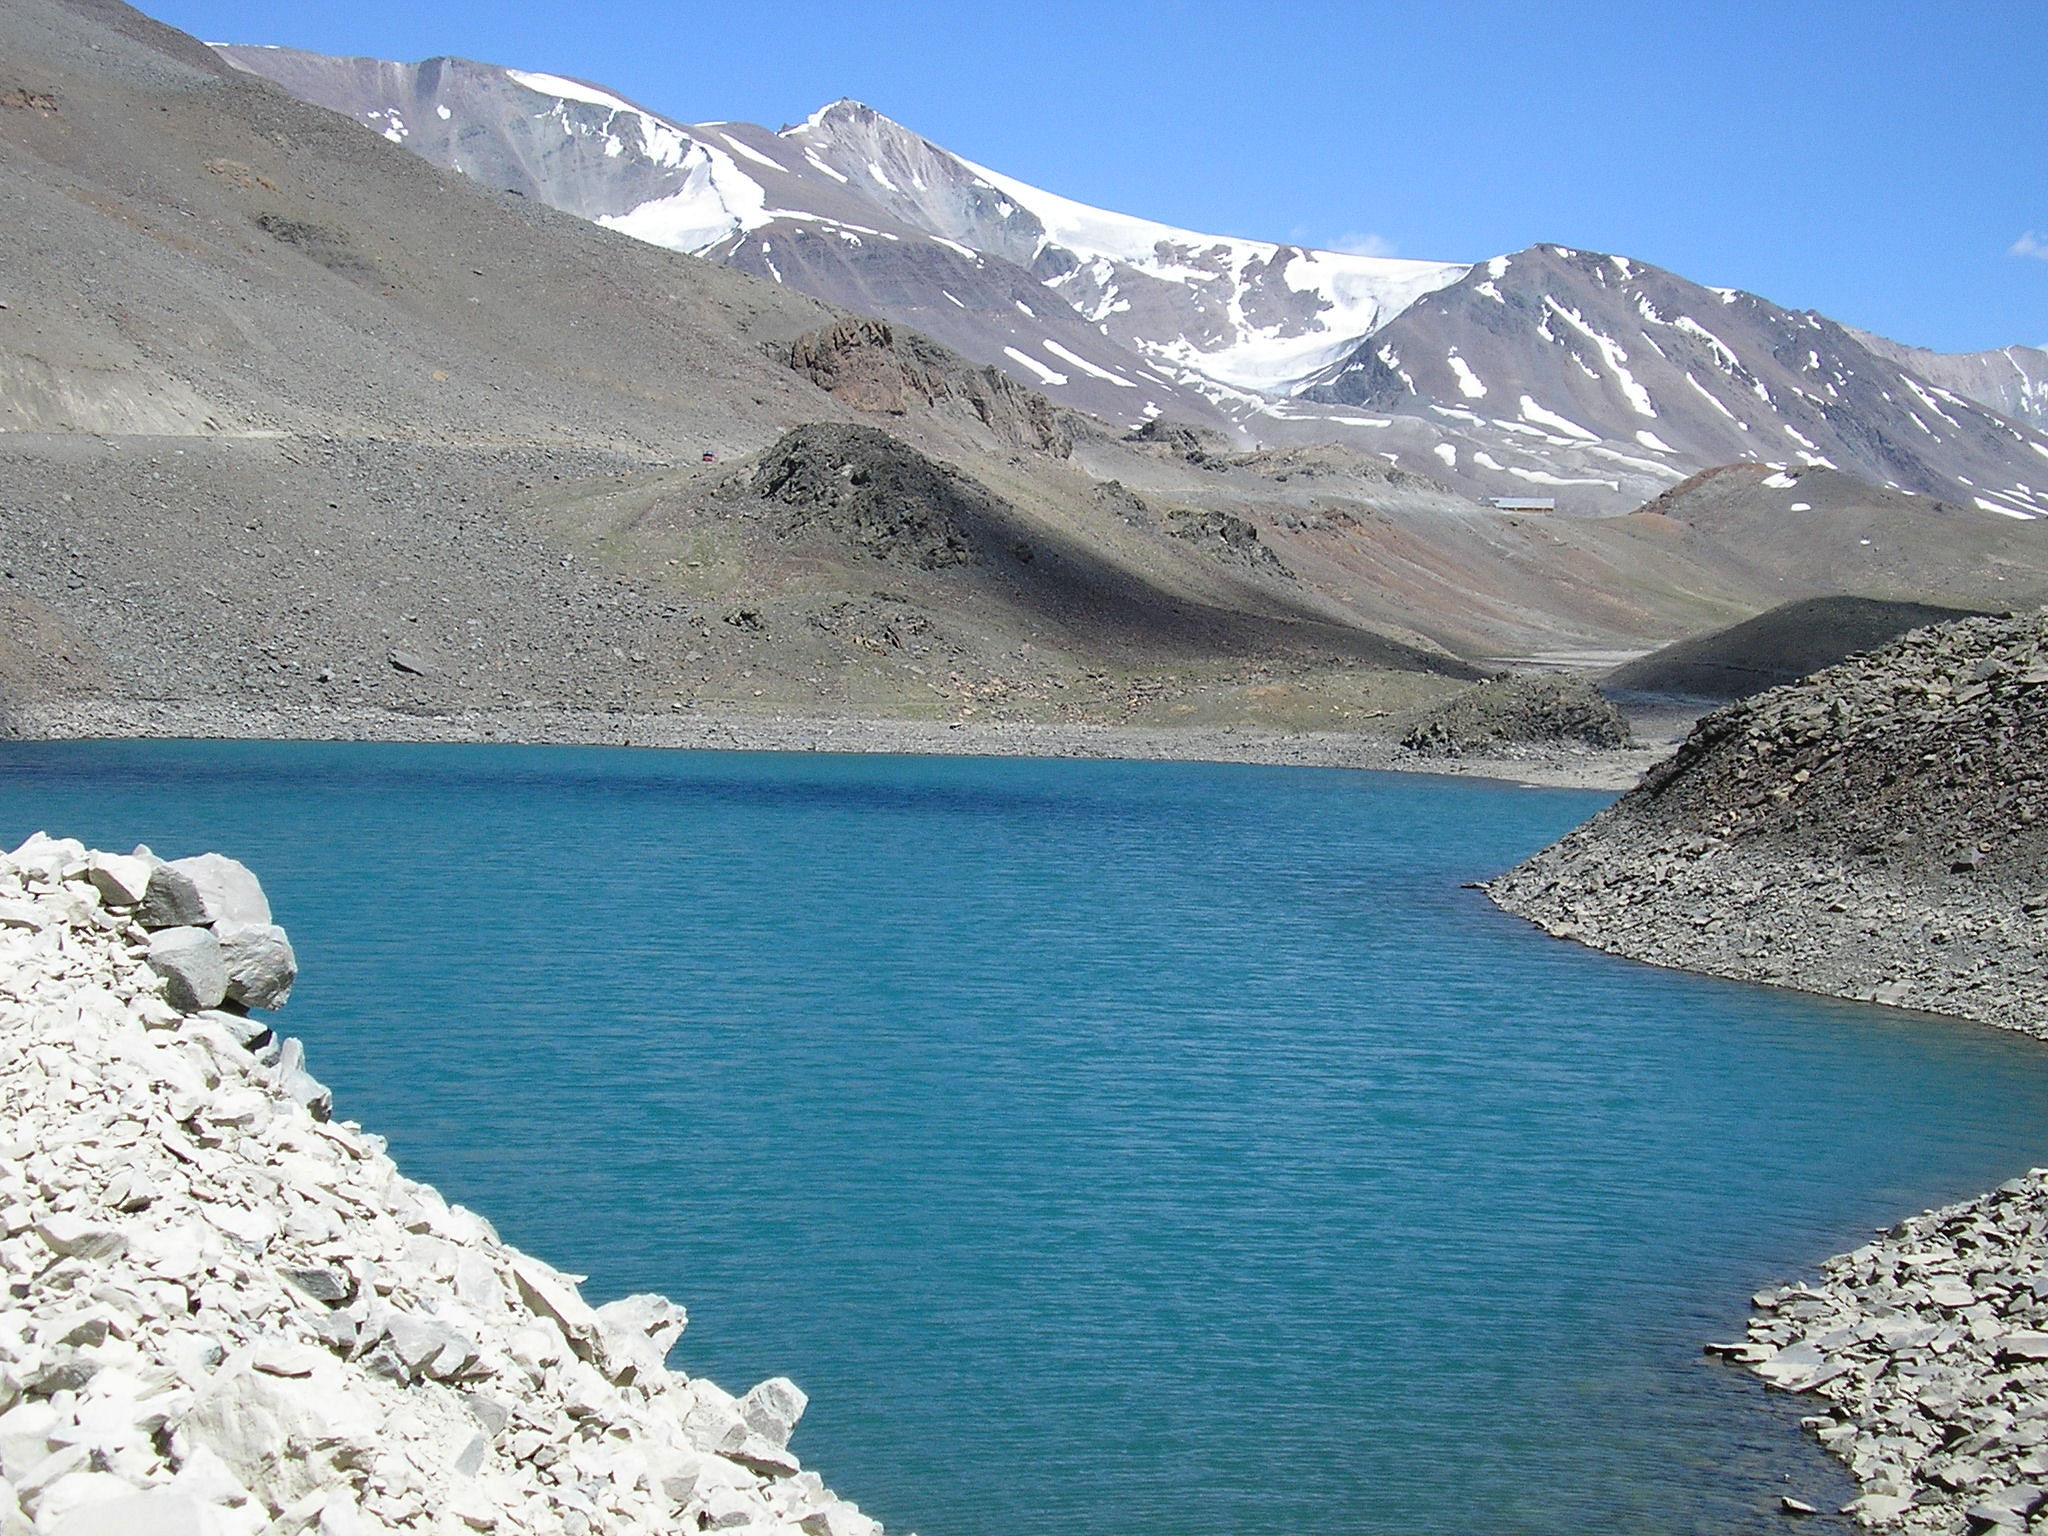 Suraj Lake